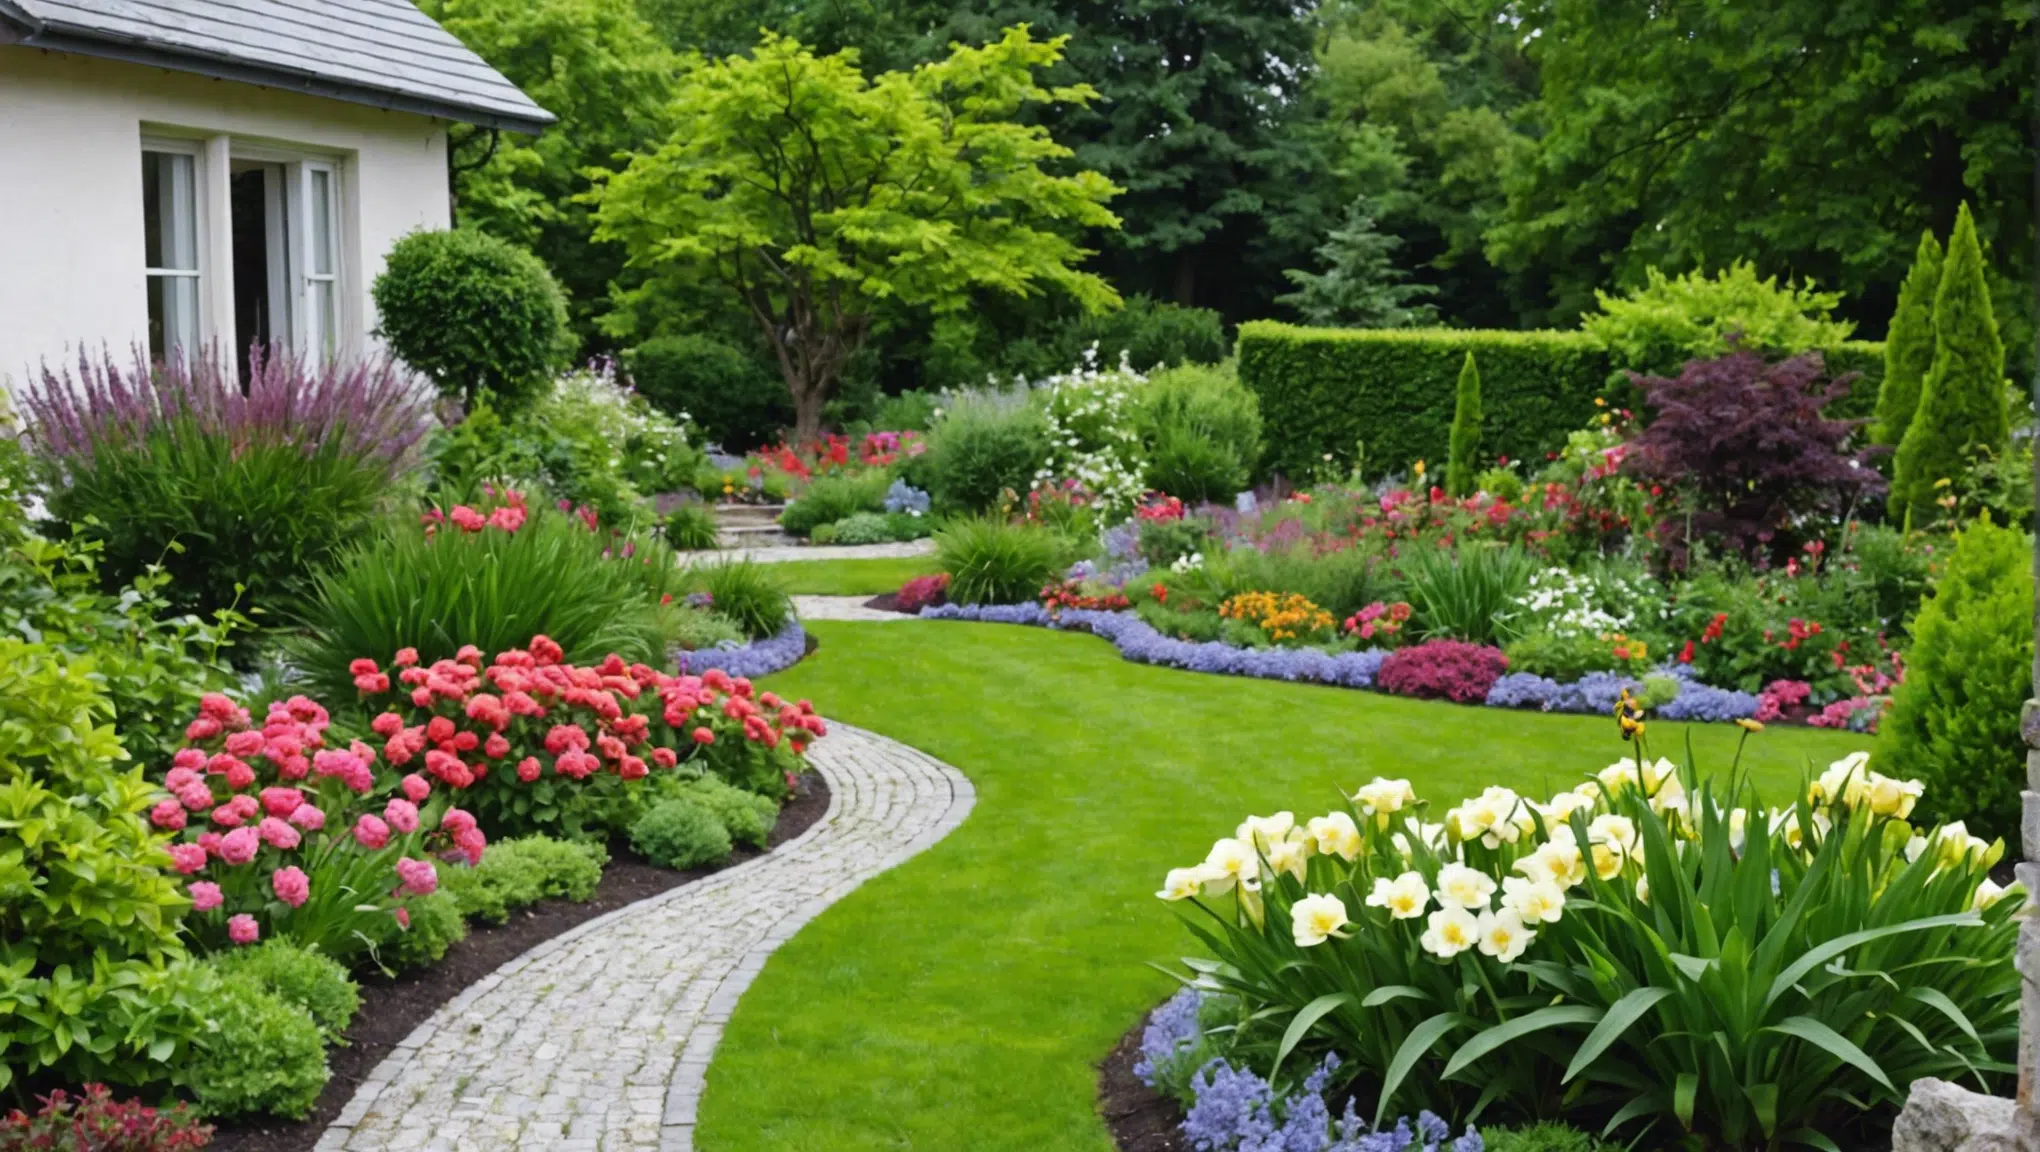 découvrez comment métamorphoser votre jardin en un véritable paradis floral grâce à ces astuces ingénieuses.